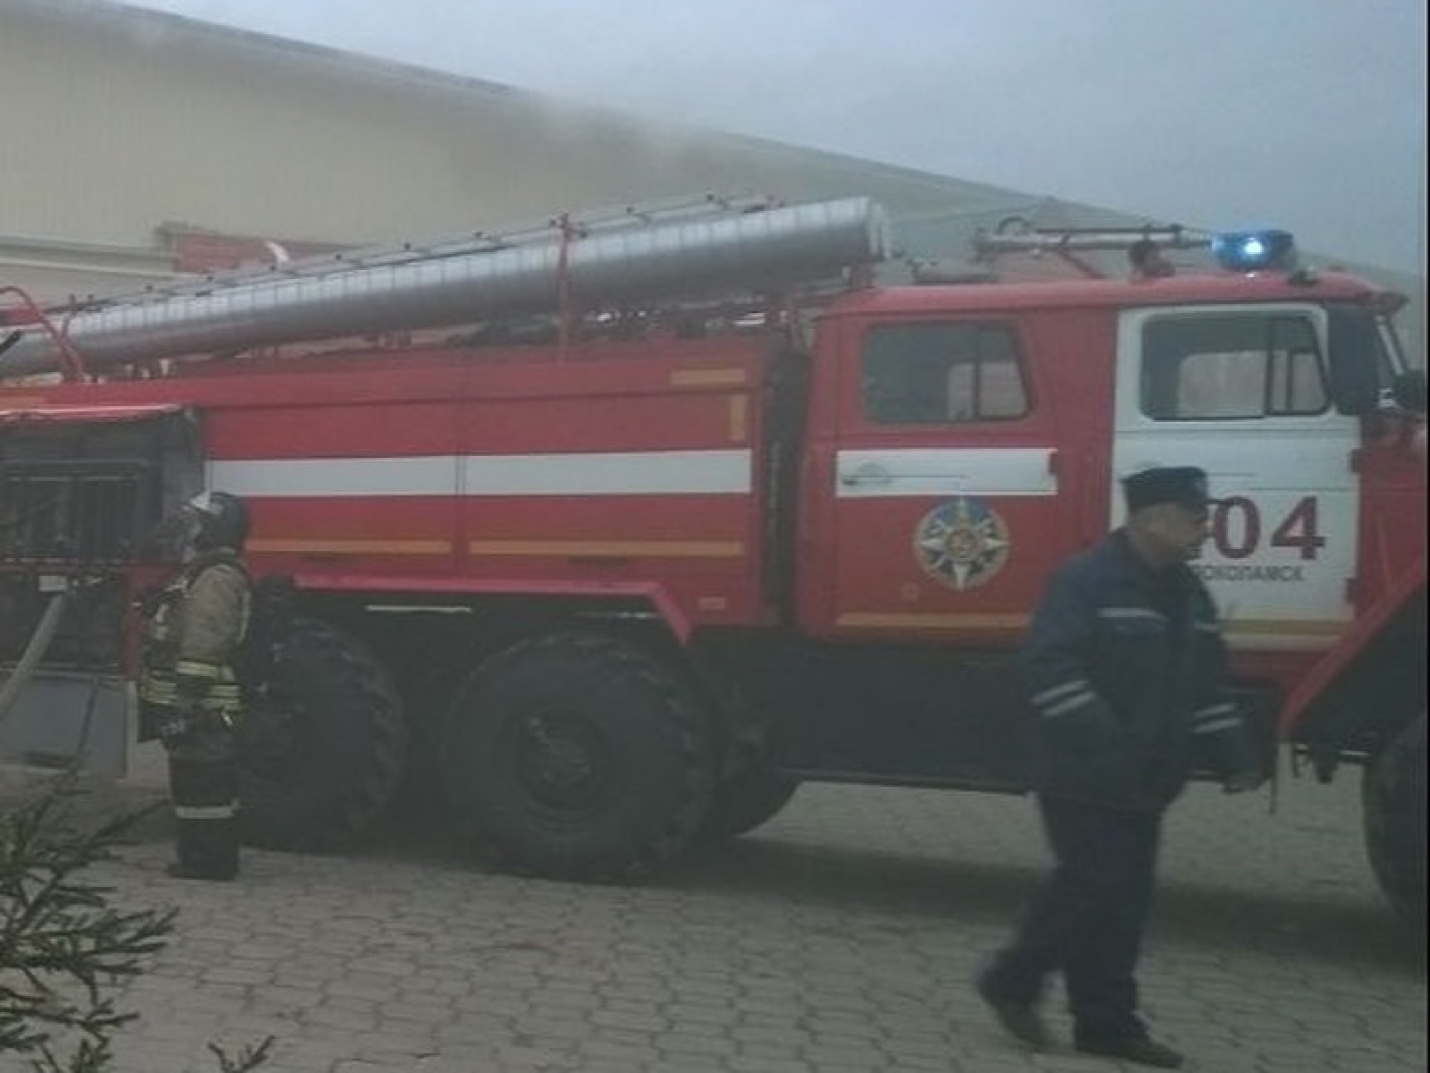 Площадь пожара на складе на юге Москвы выросла до 1 500 кв м